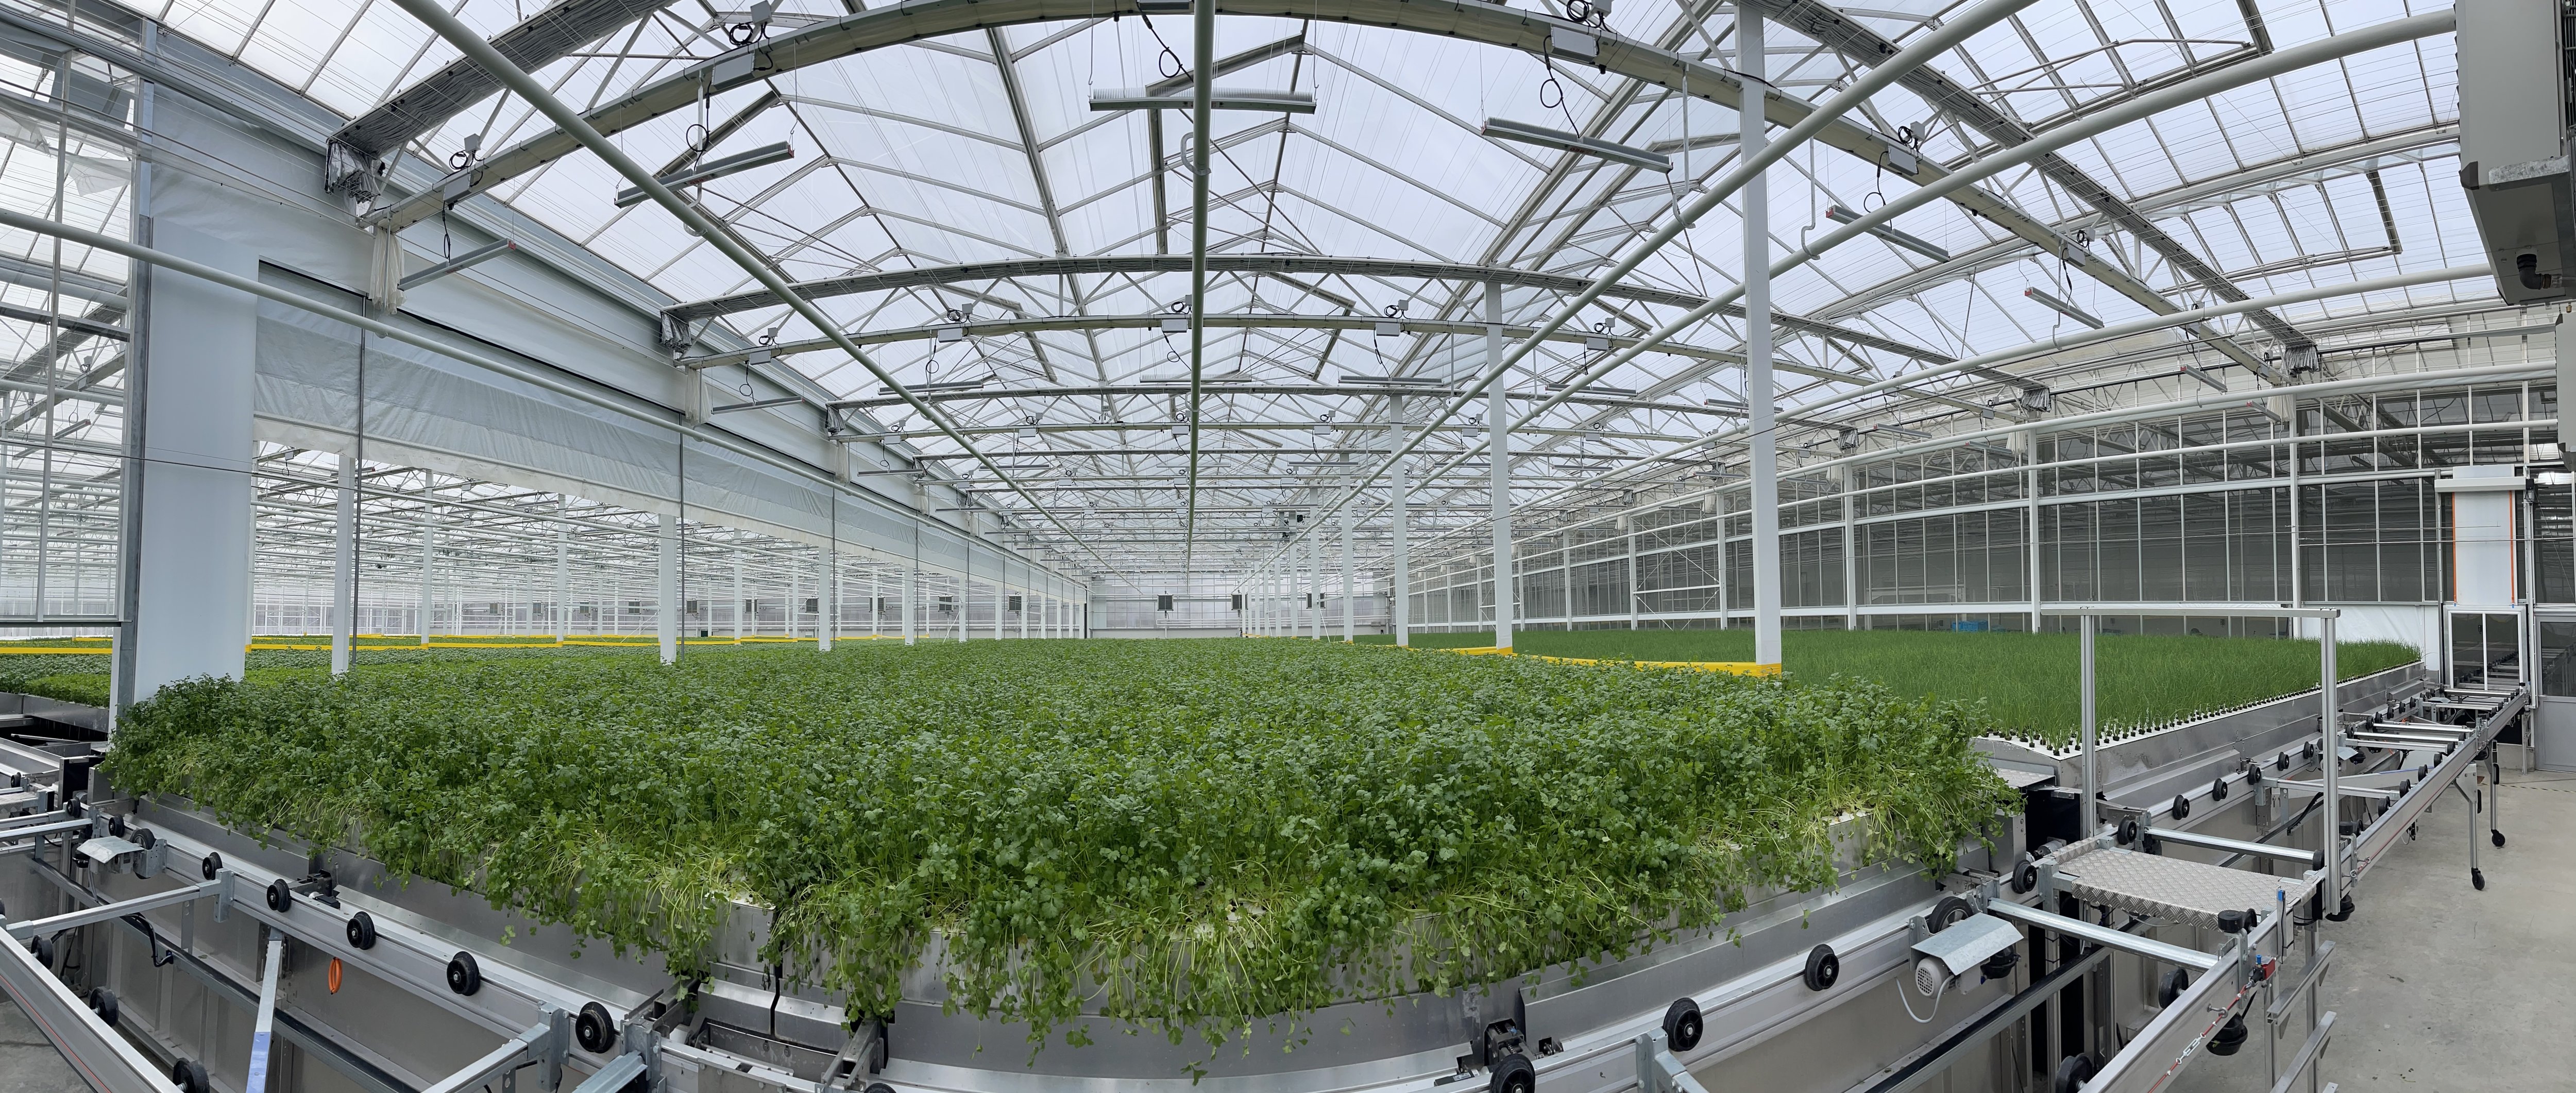 Dans des serres de 7 000 m2, six variétés d'herbes aromatiques poussent hors sol, grâce à une solution nutritive pulvérisée sur leurs racines. DR